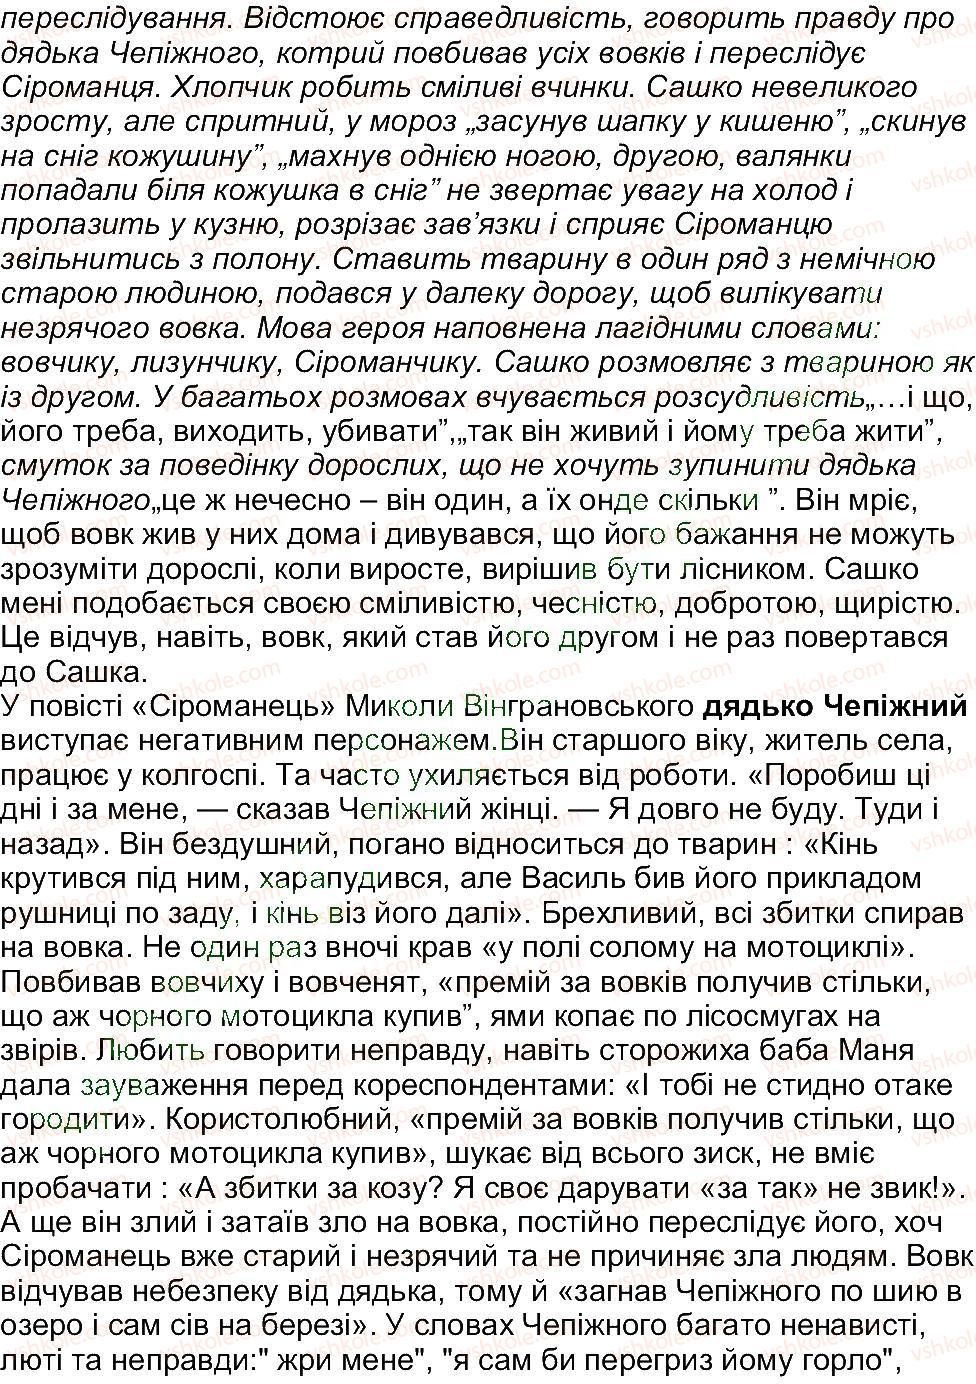 5-ukrayinska-literatura-om-avramenko-2013--ridna-ukrayina-svit-prirodi-zavdannya-zi-storinki-279-11-rnd3500.jpg